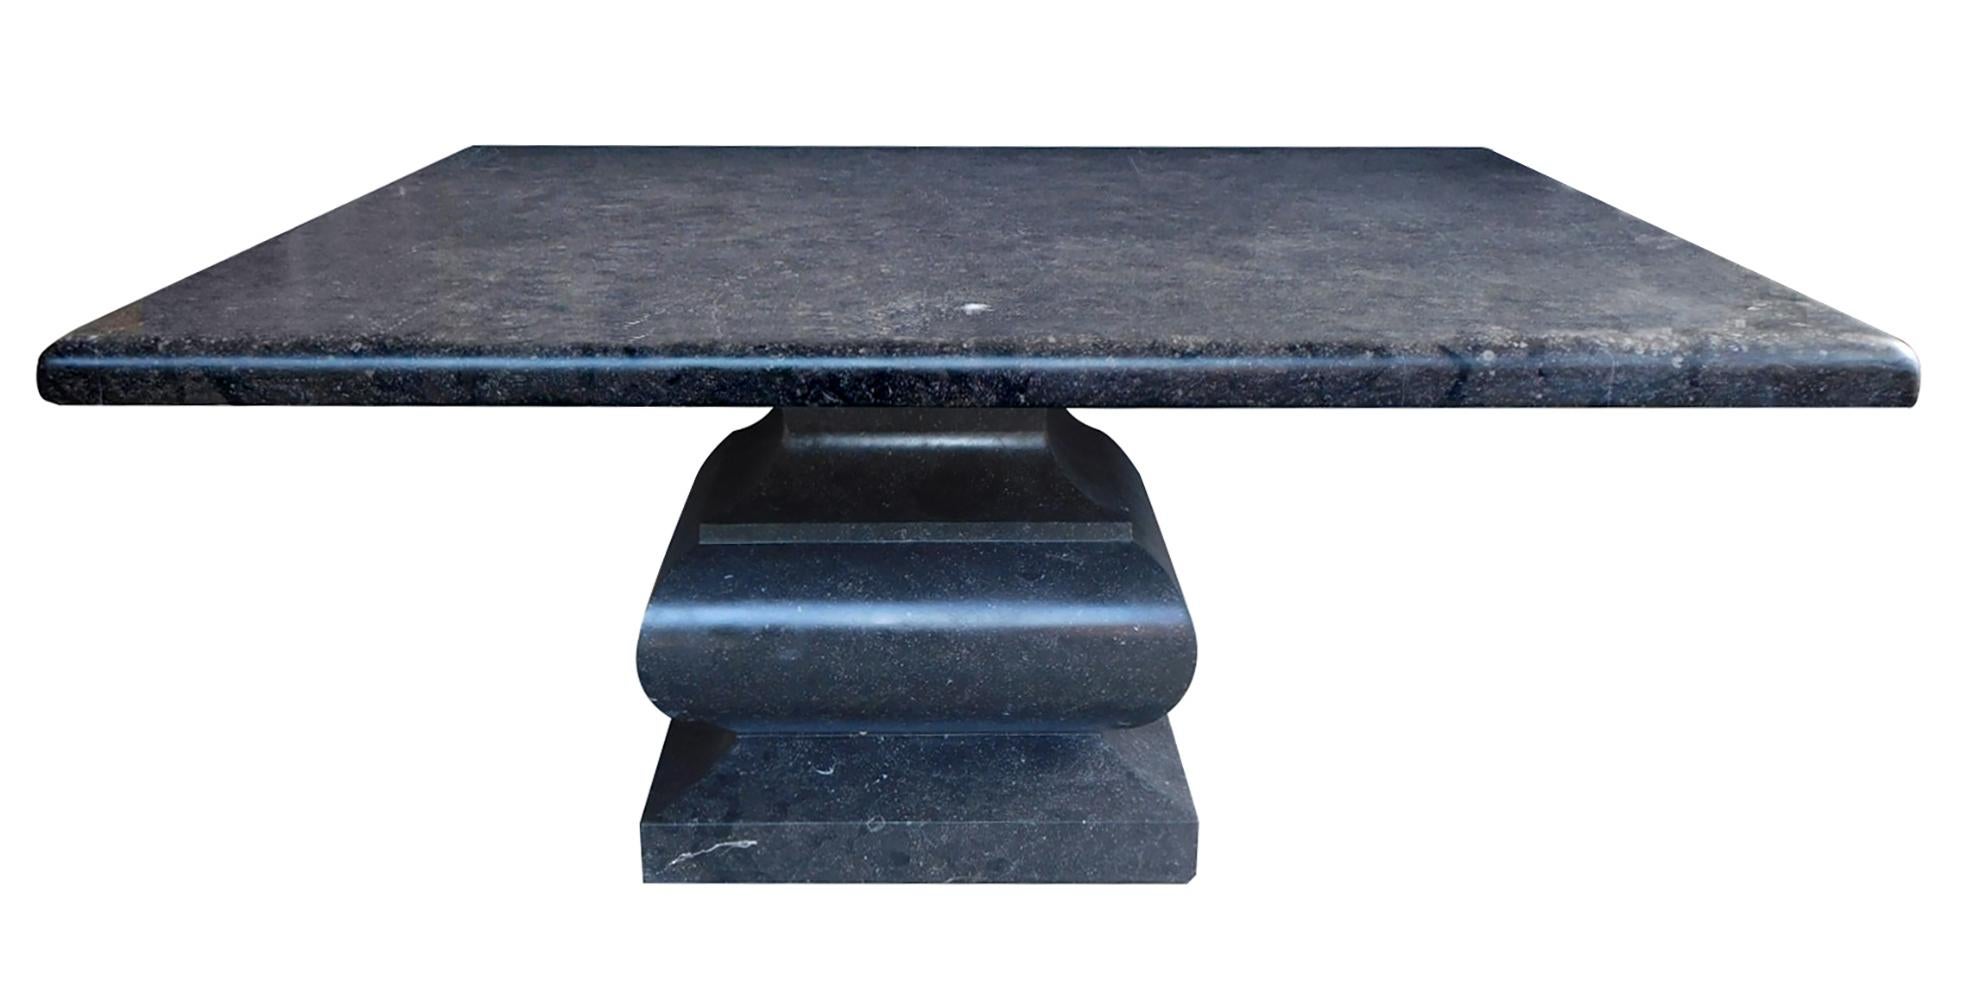 Fabriquée en pierre bleue belge avec une finition adoucie et incrustée de fossiles, la table se compose d'un épais plateau carré à bord arrondi et d'un support en forme de balustre. Neuve avec un minimum d'usure, cette table est idéale pour les